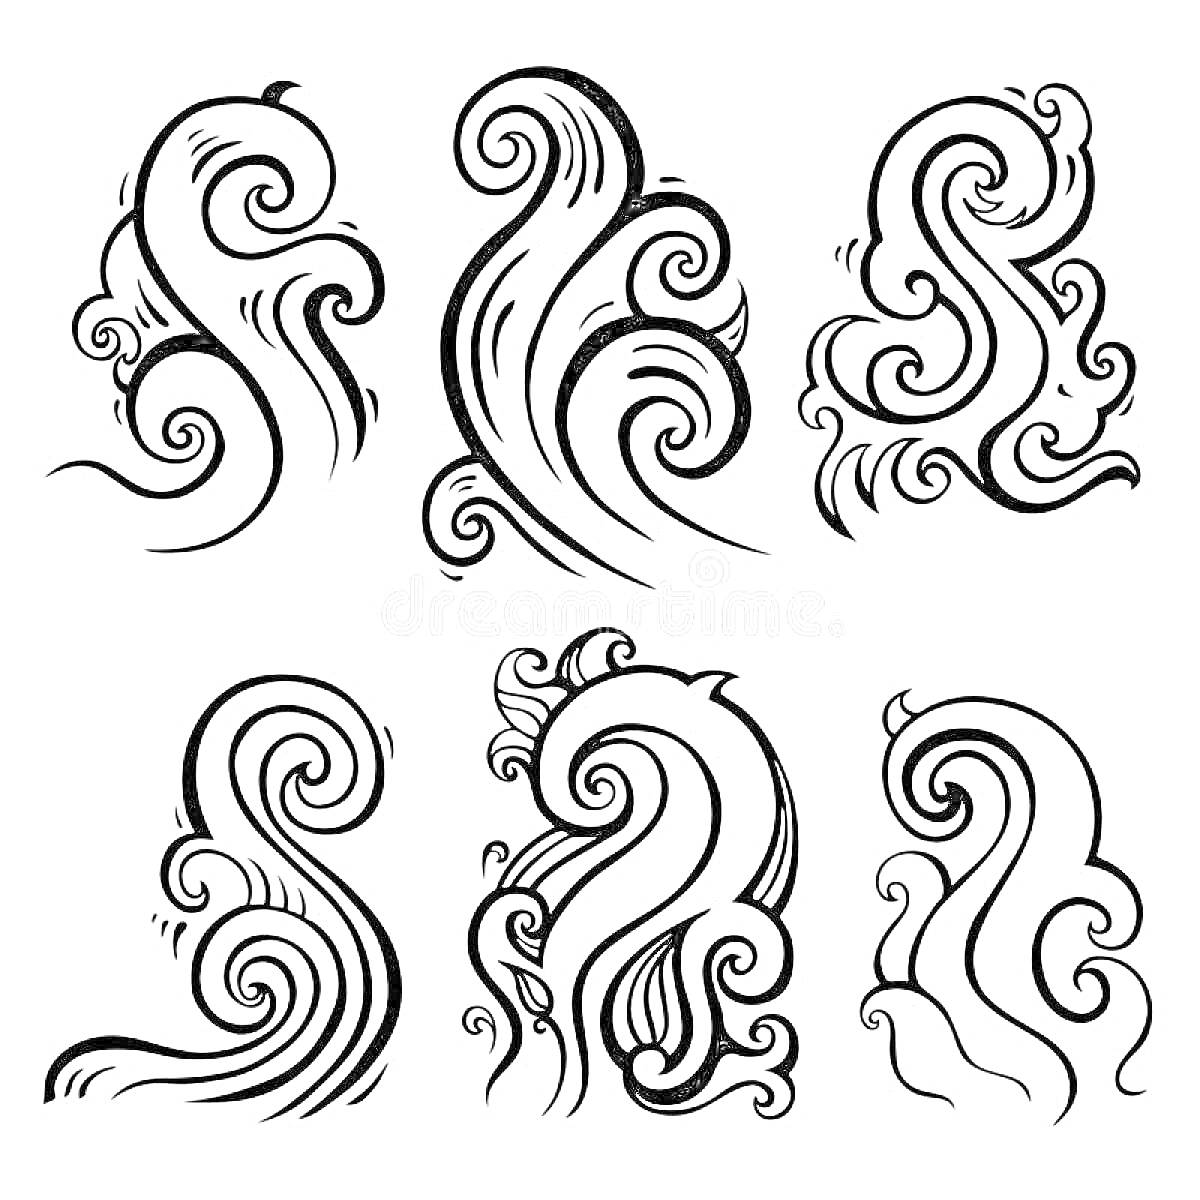 Волны в различных стилизованных формах - шесть различных узоров волн с завитками и линиями.